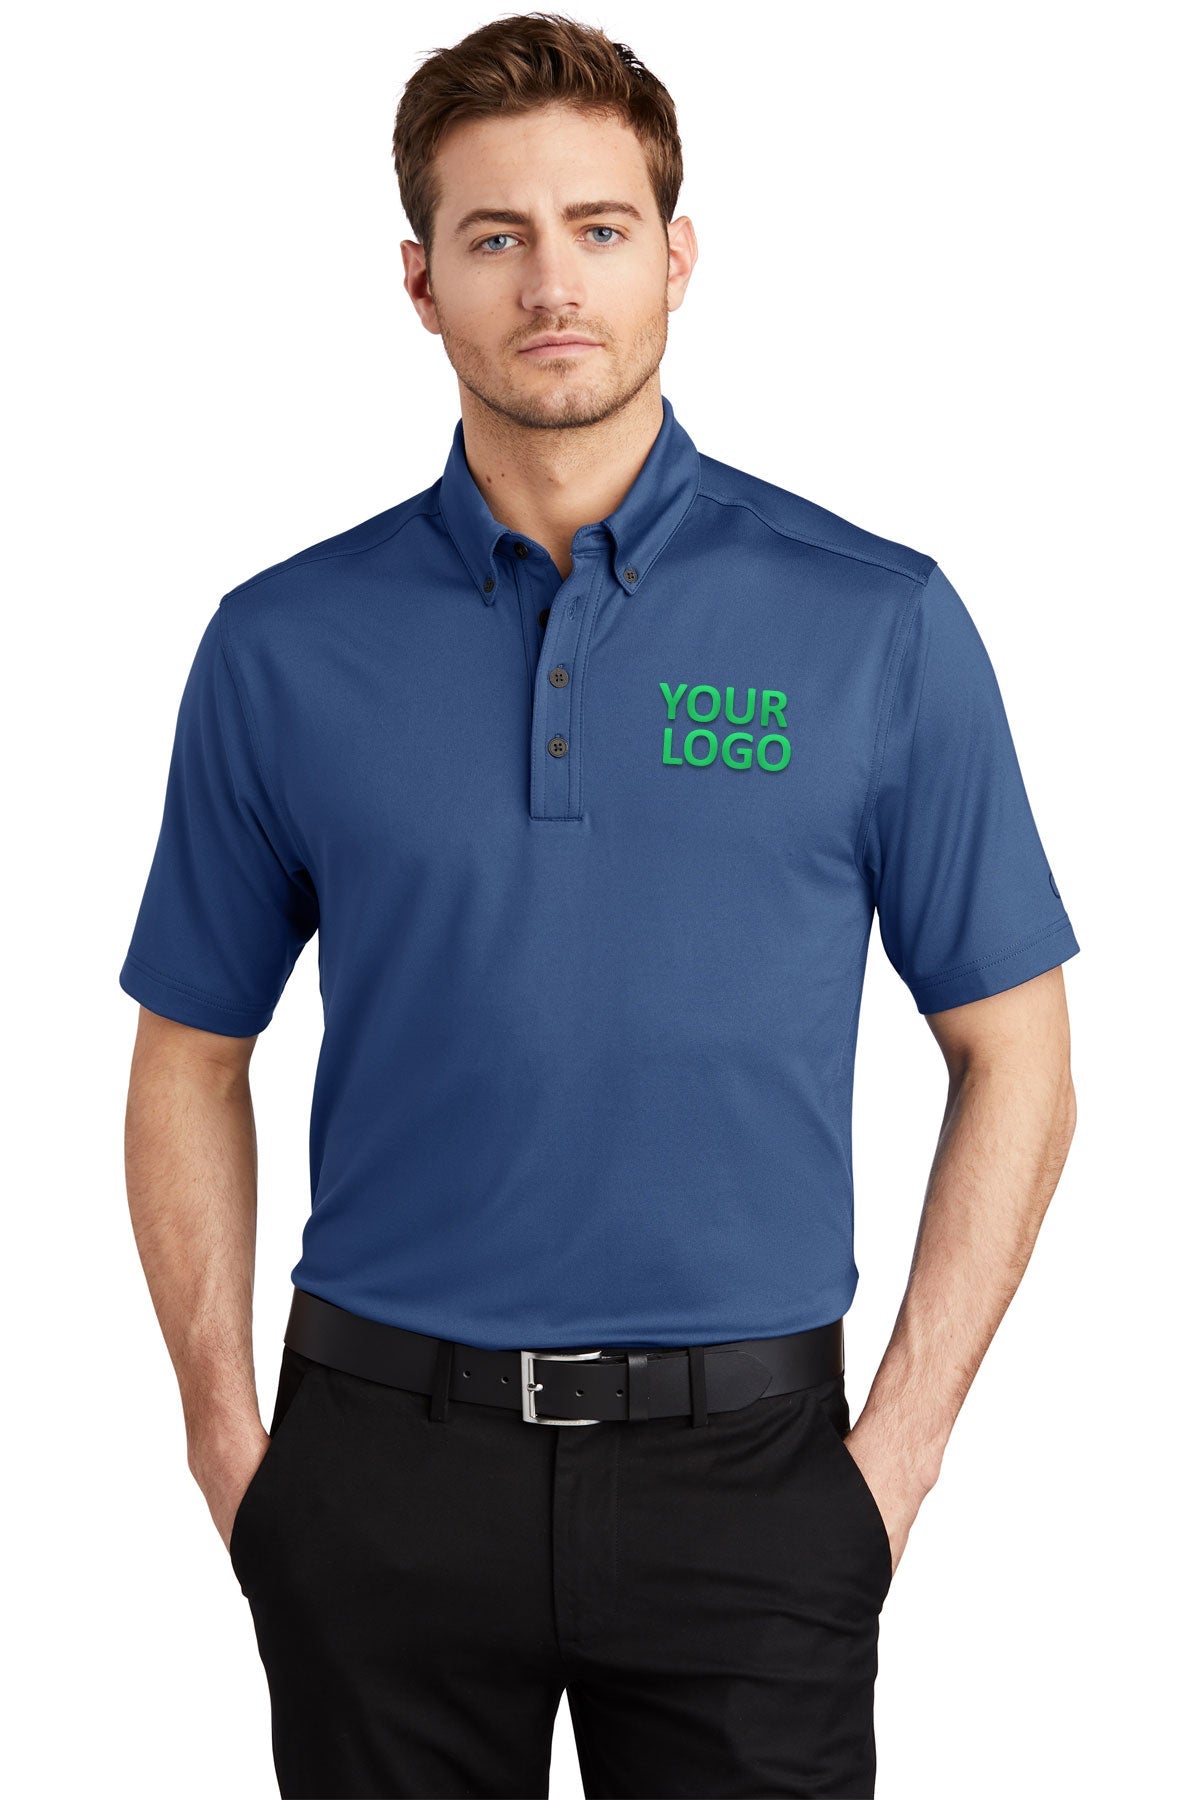 OGIO Blue Indigo OG122 work polo shirts with logo